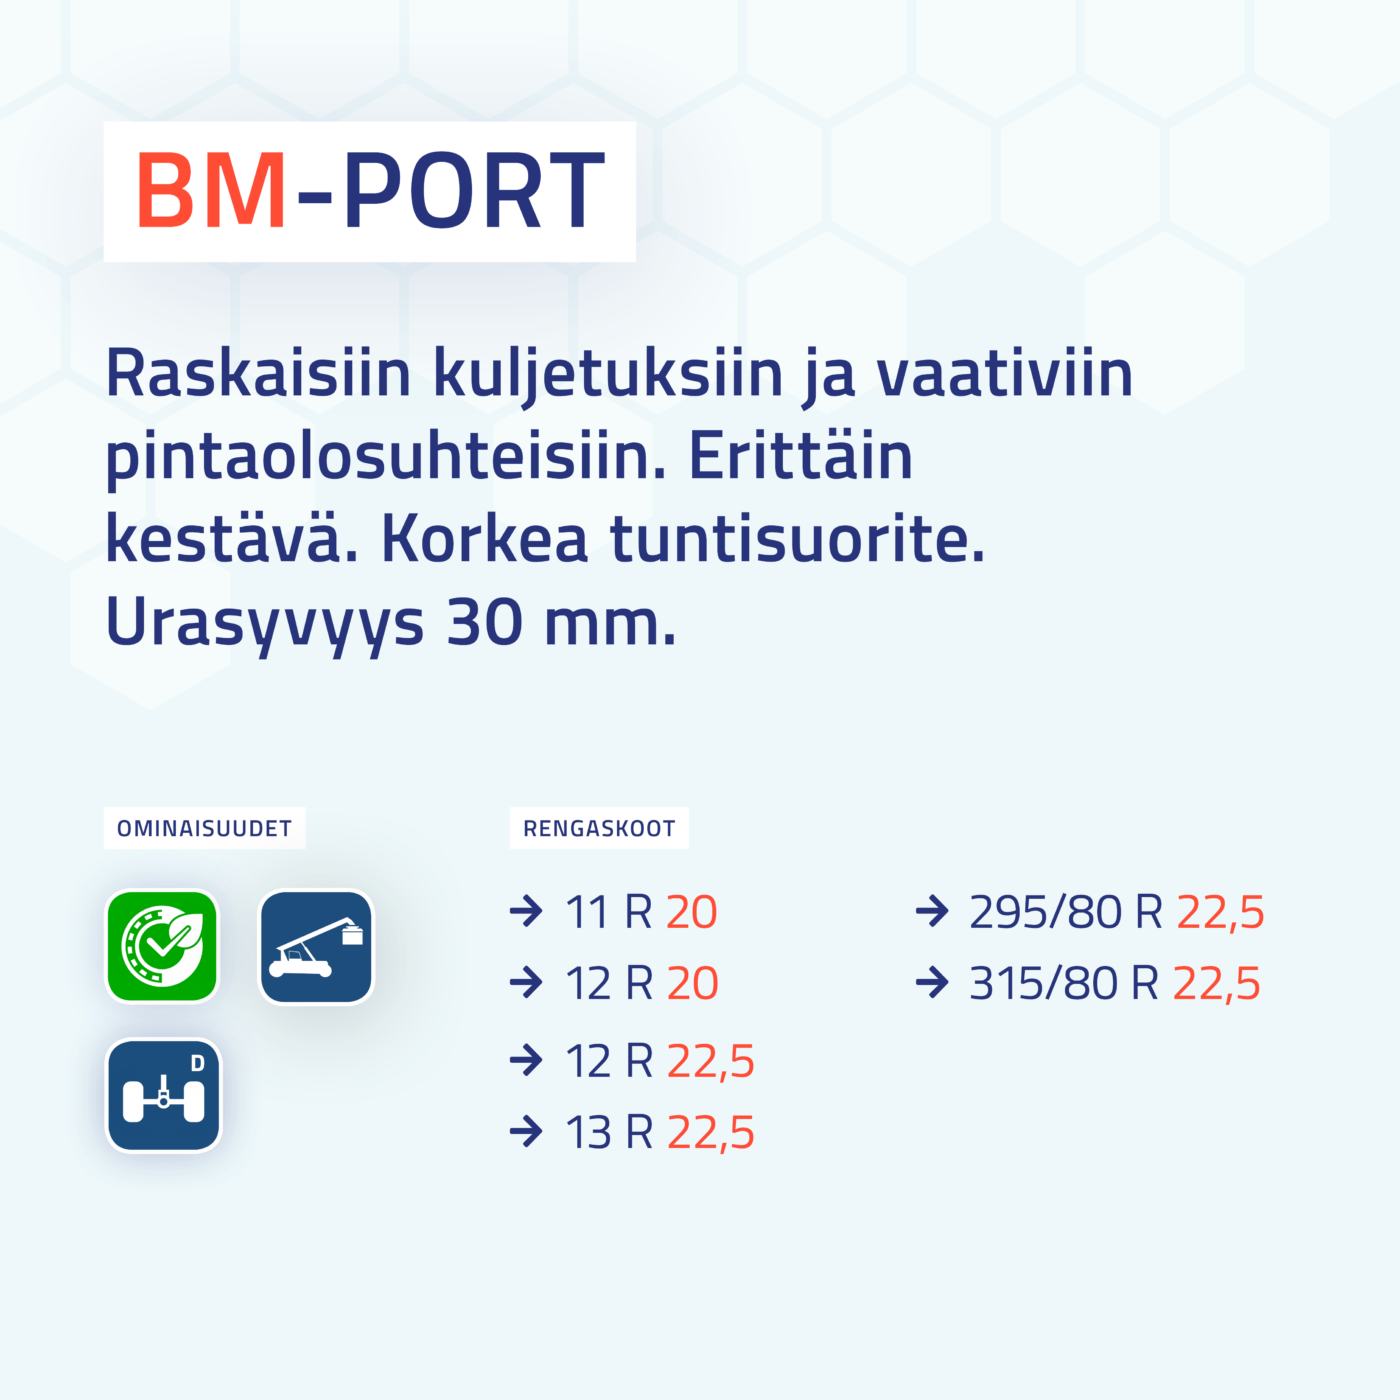 BM-PORT